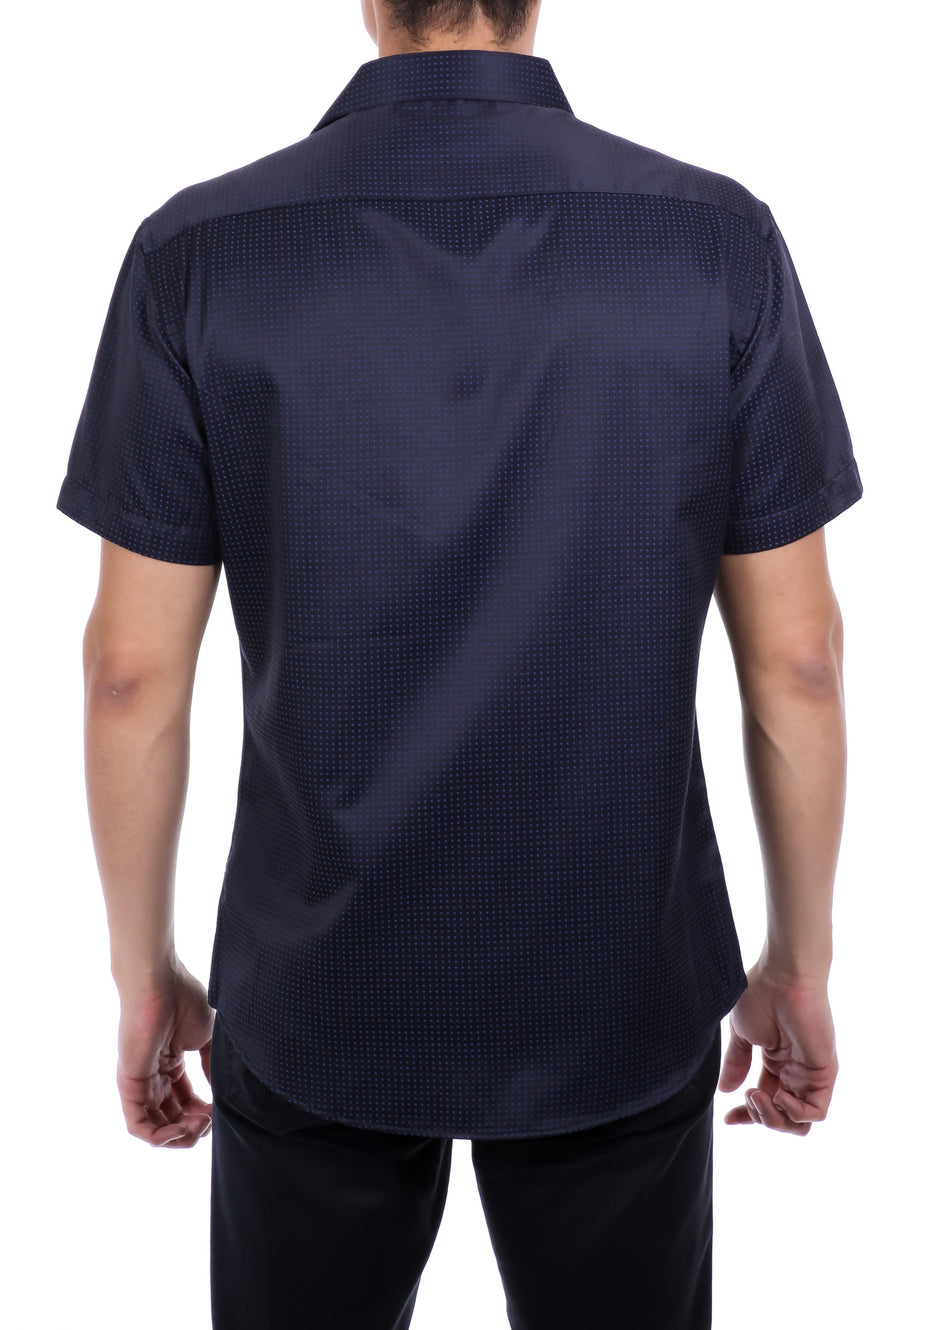 202117 - Men's Navy Button Up Short Sleeve Dress Shirt